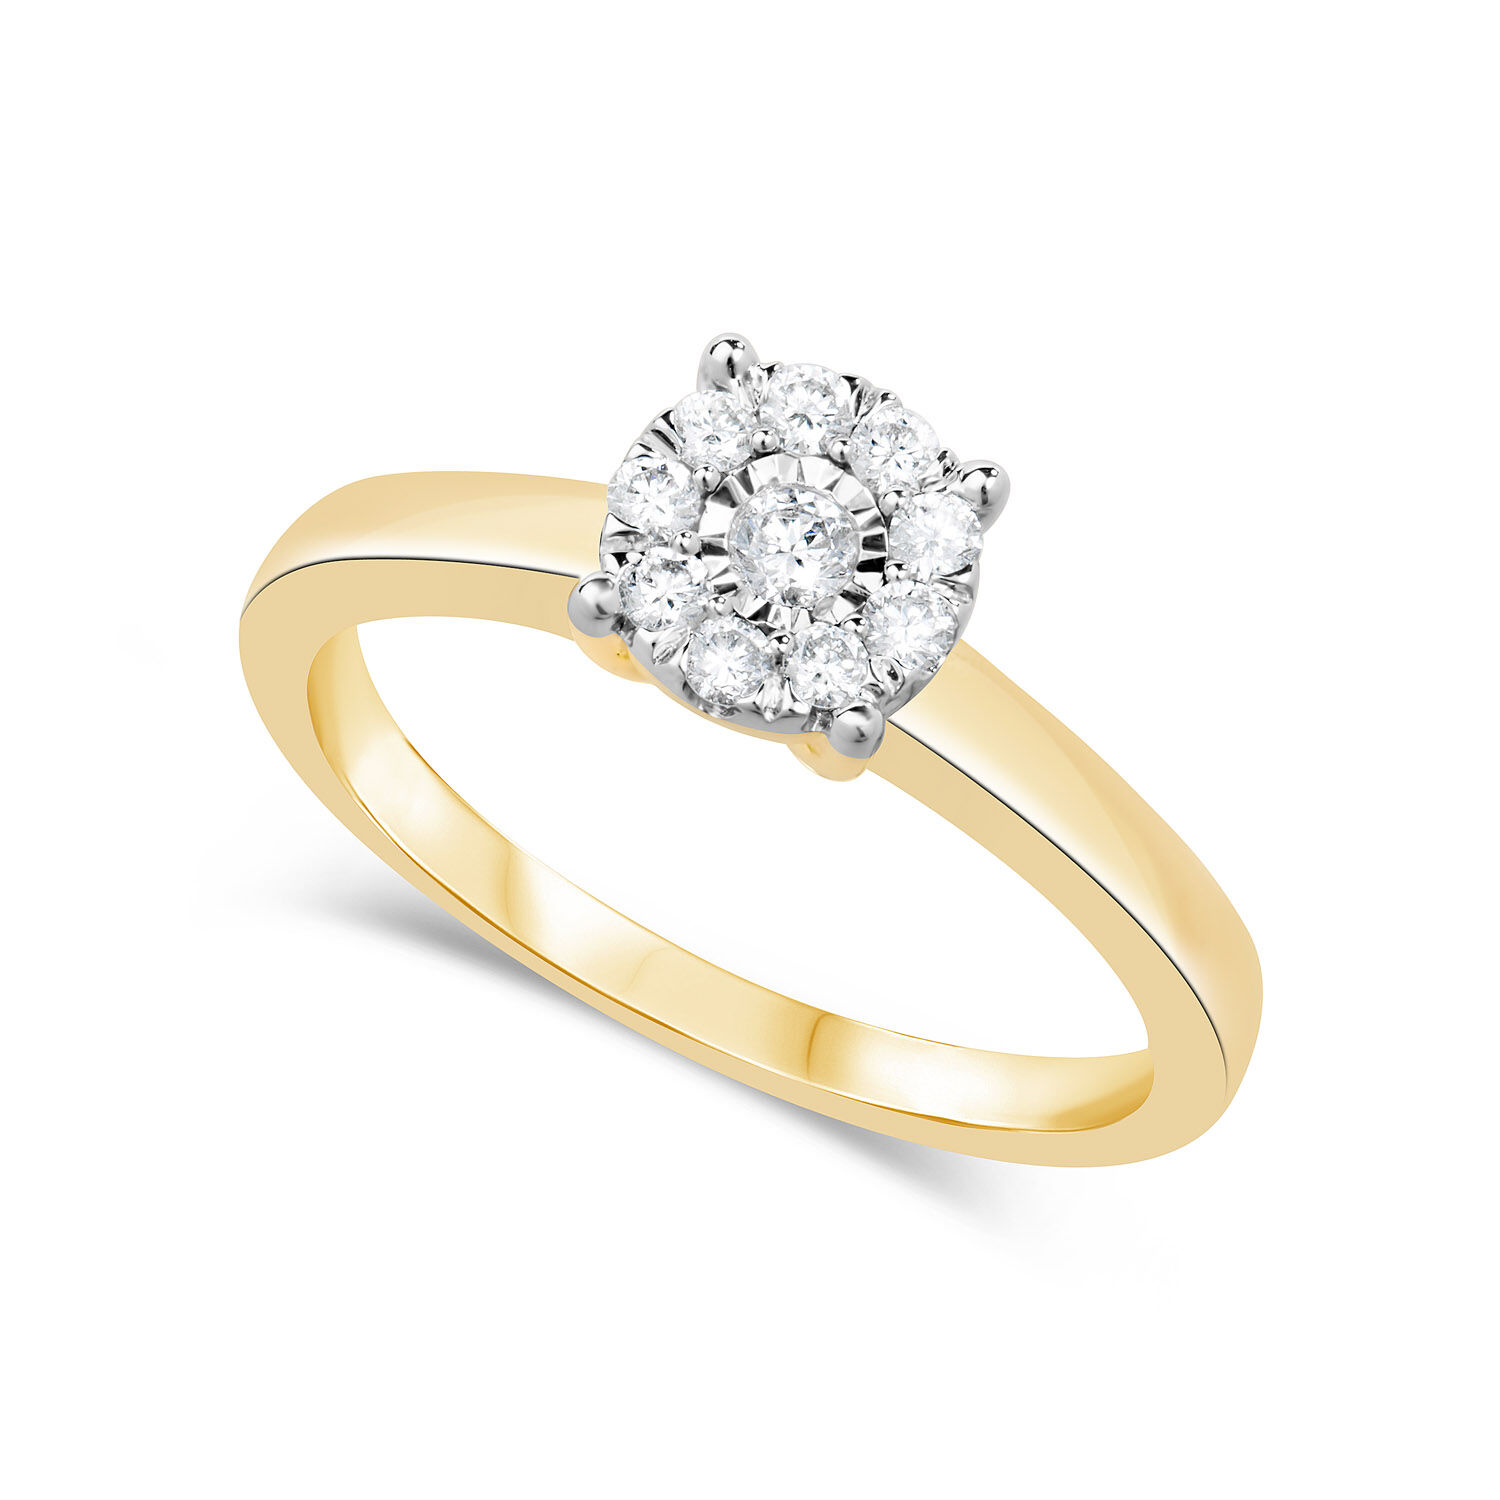 Platinum Diamond Cluster Ring UK Size N, US 6.75 - Ruby Lane